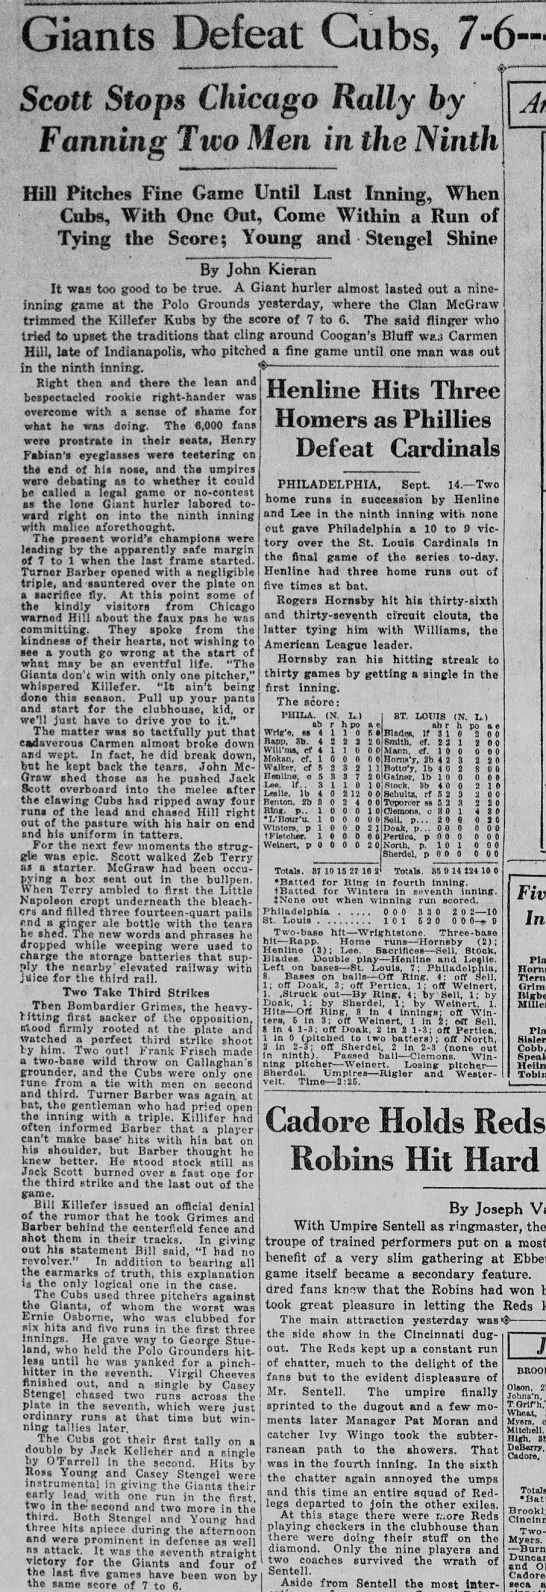 New York Tribune September 16 1922 - 